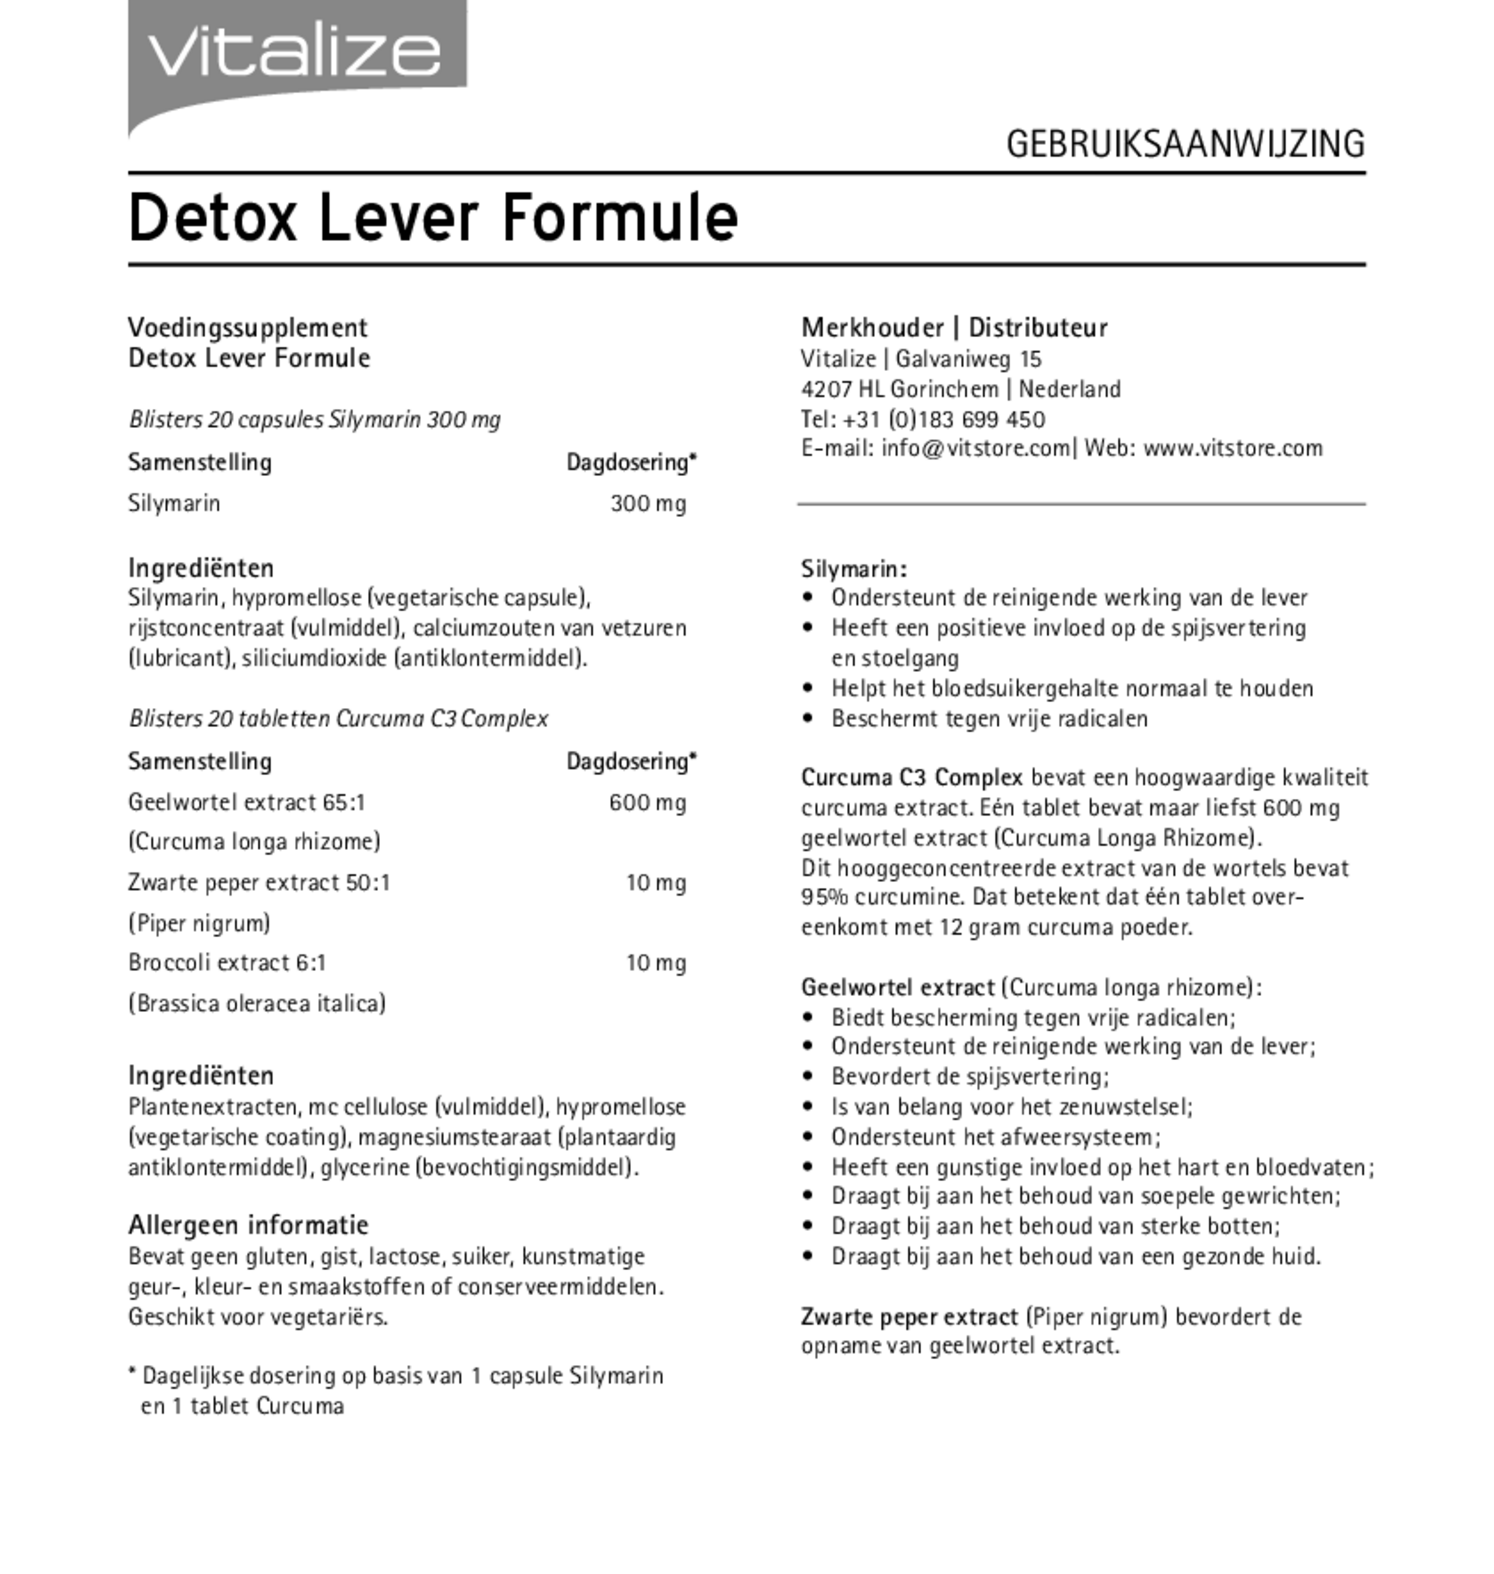 Detox Lever Formule 20 Capsules + 20 Tabletten afbeelding van document #1, gebruiksaanwijzing